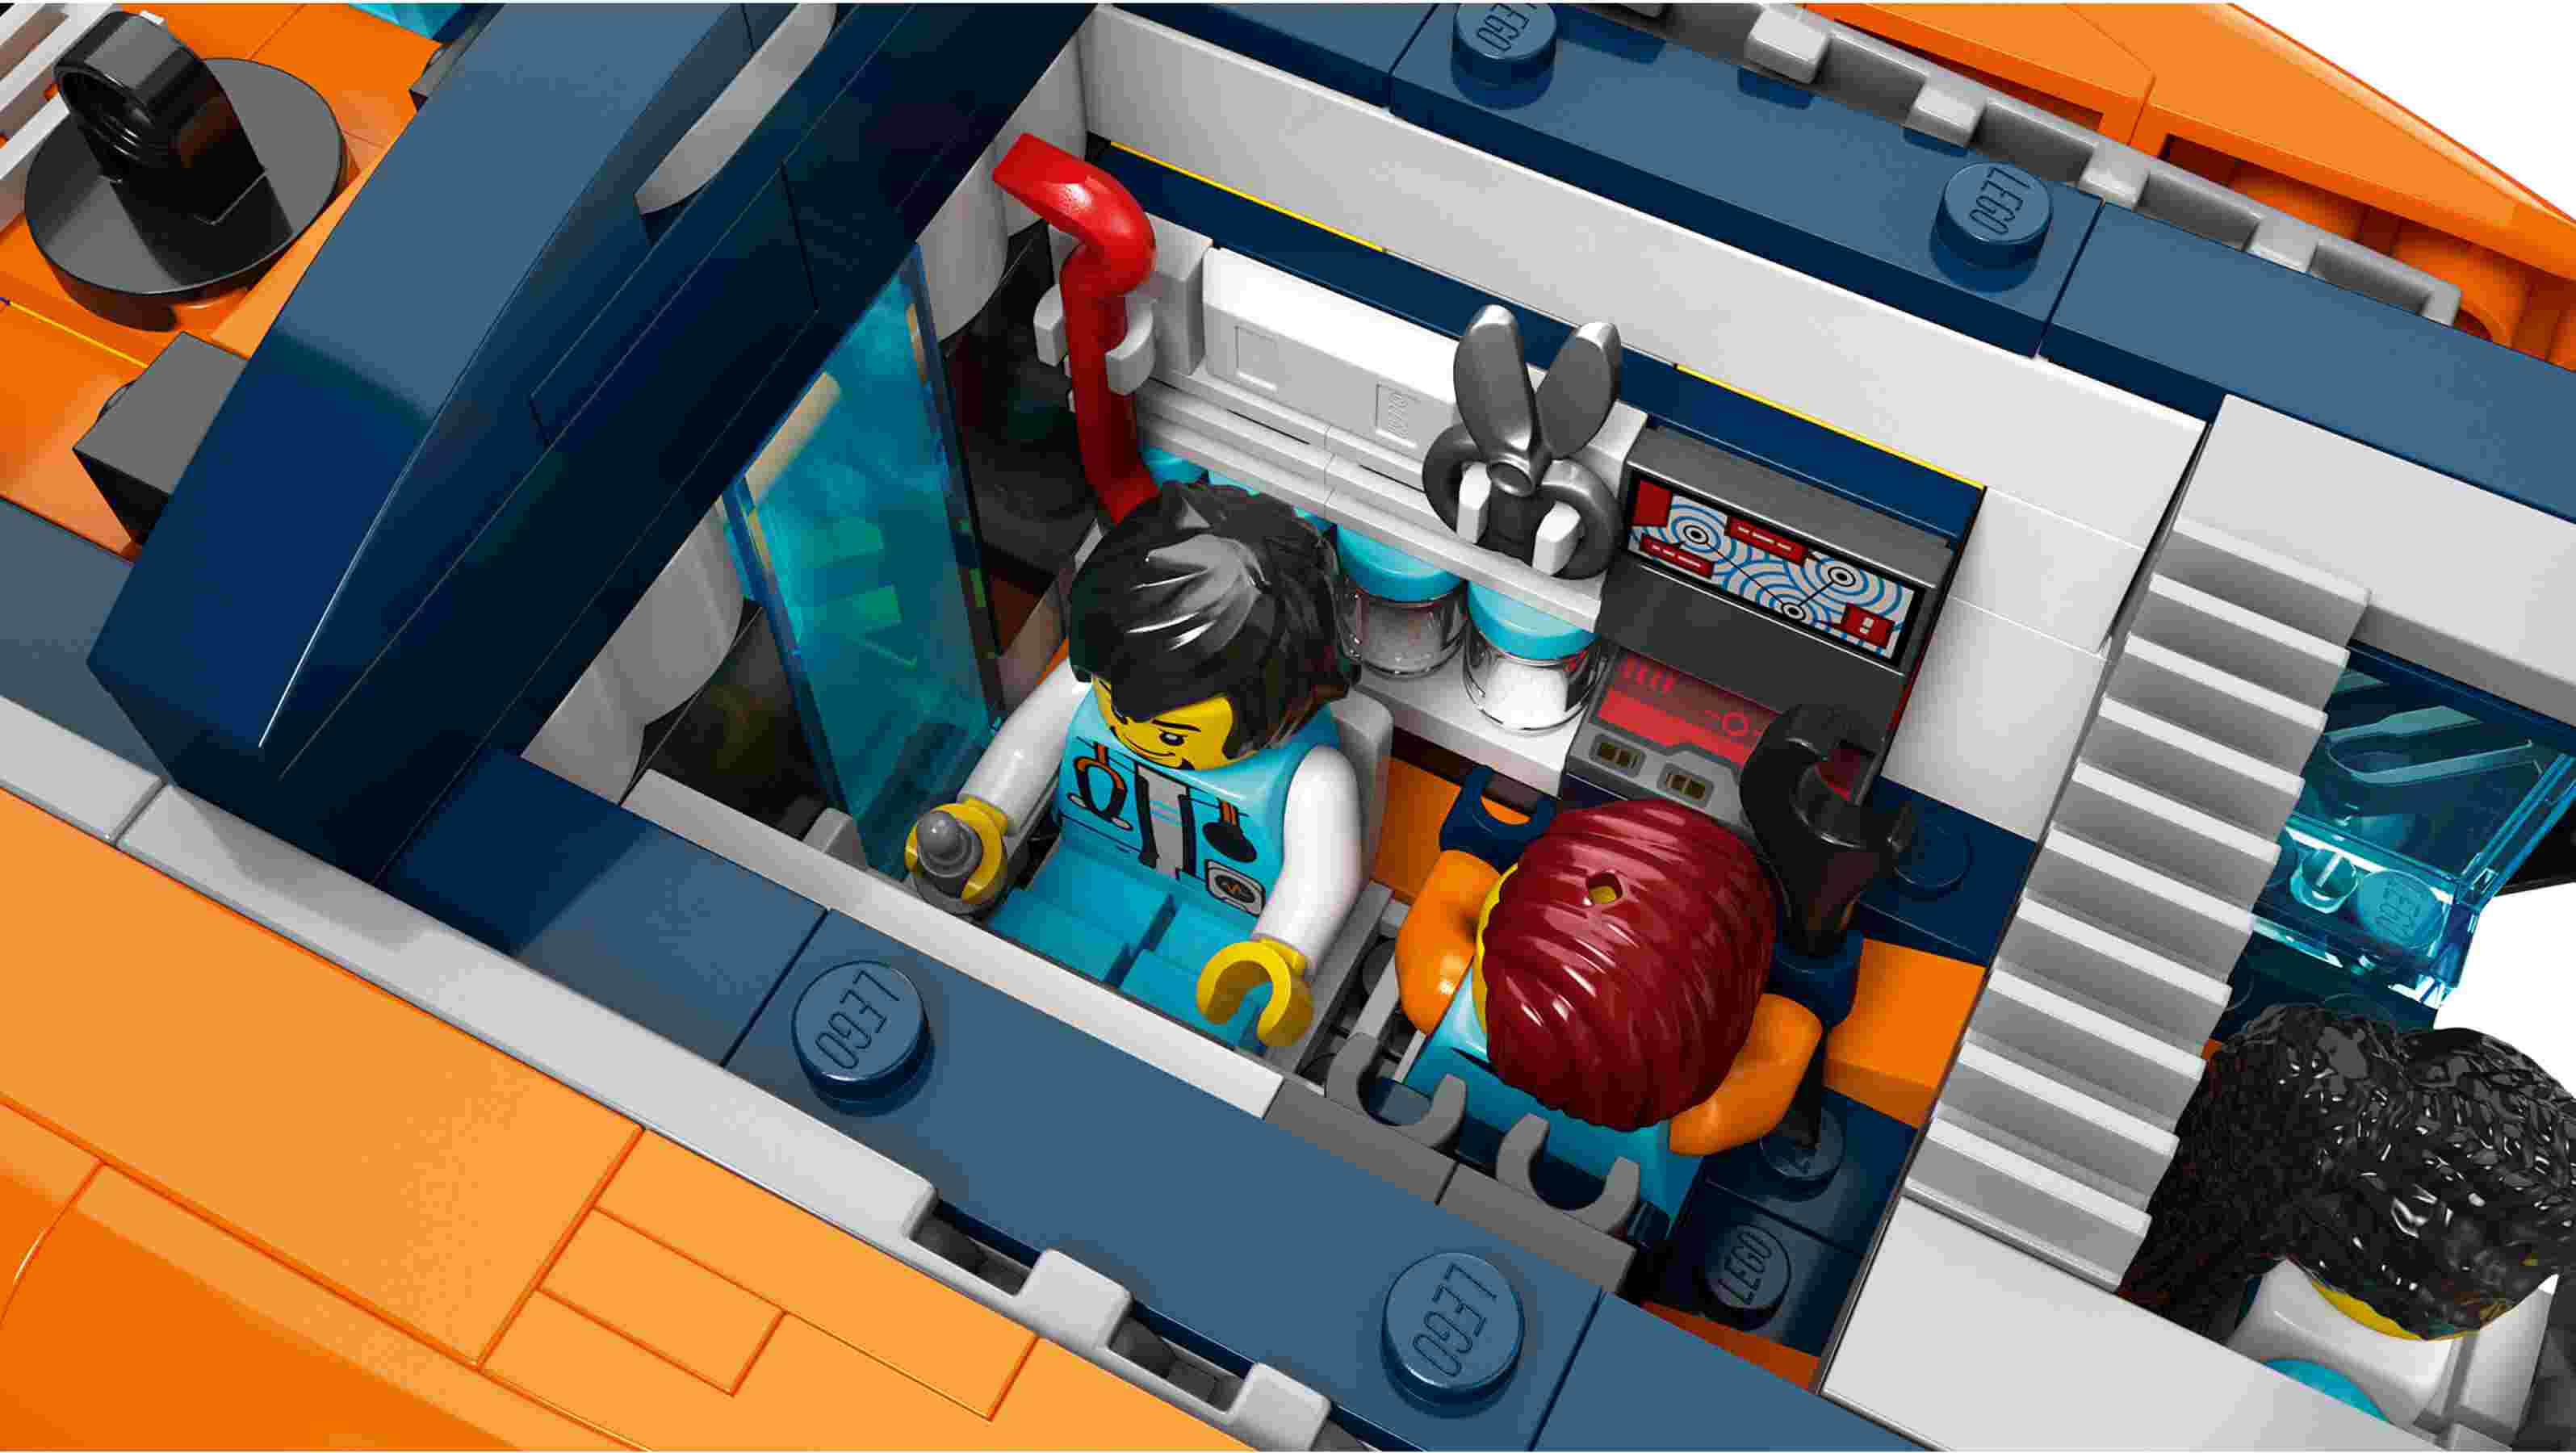 LEGO 60379 City Forscher-U-Boot, 6 Minifiguren, Schiffswrack mit Schatz